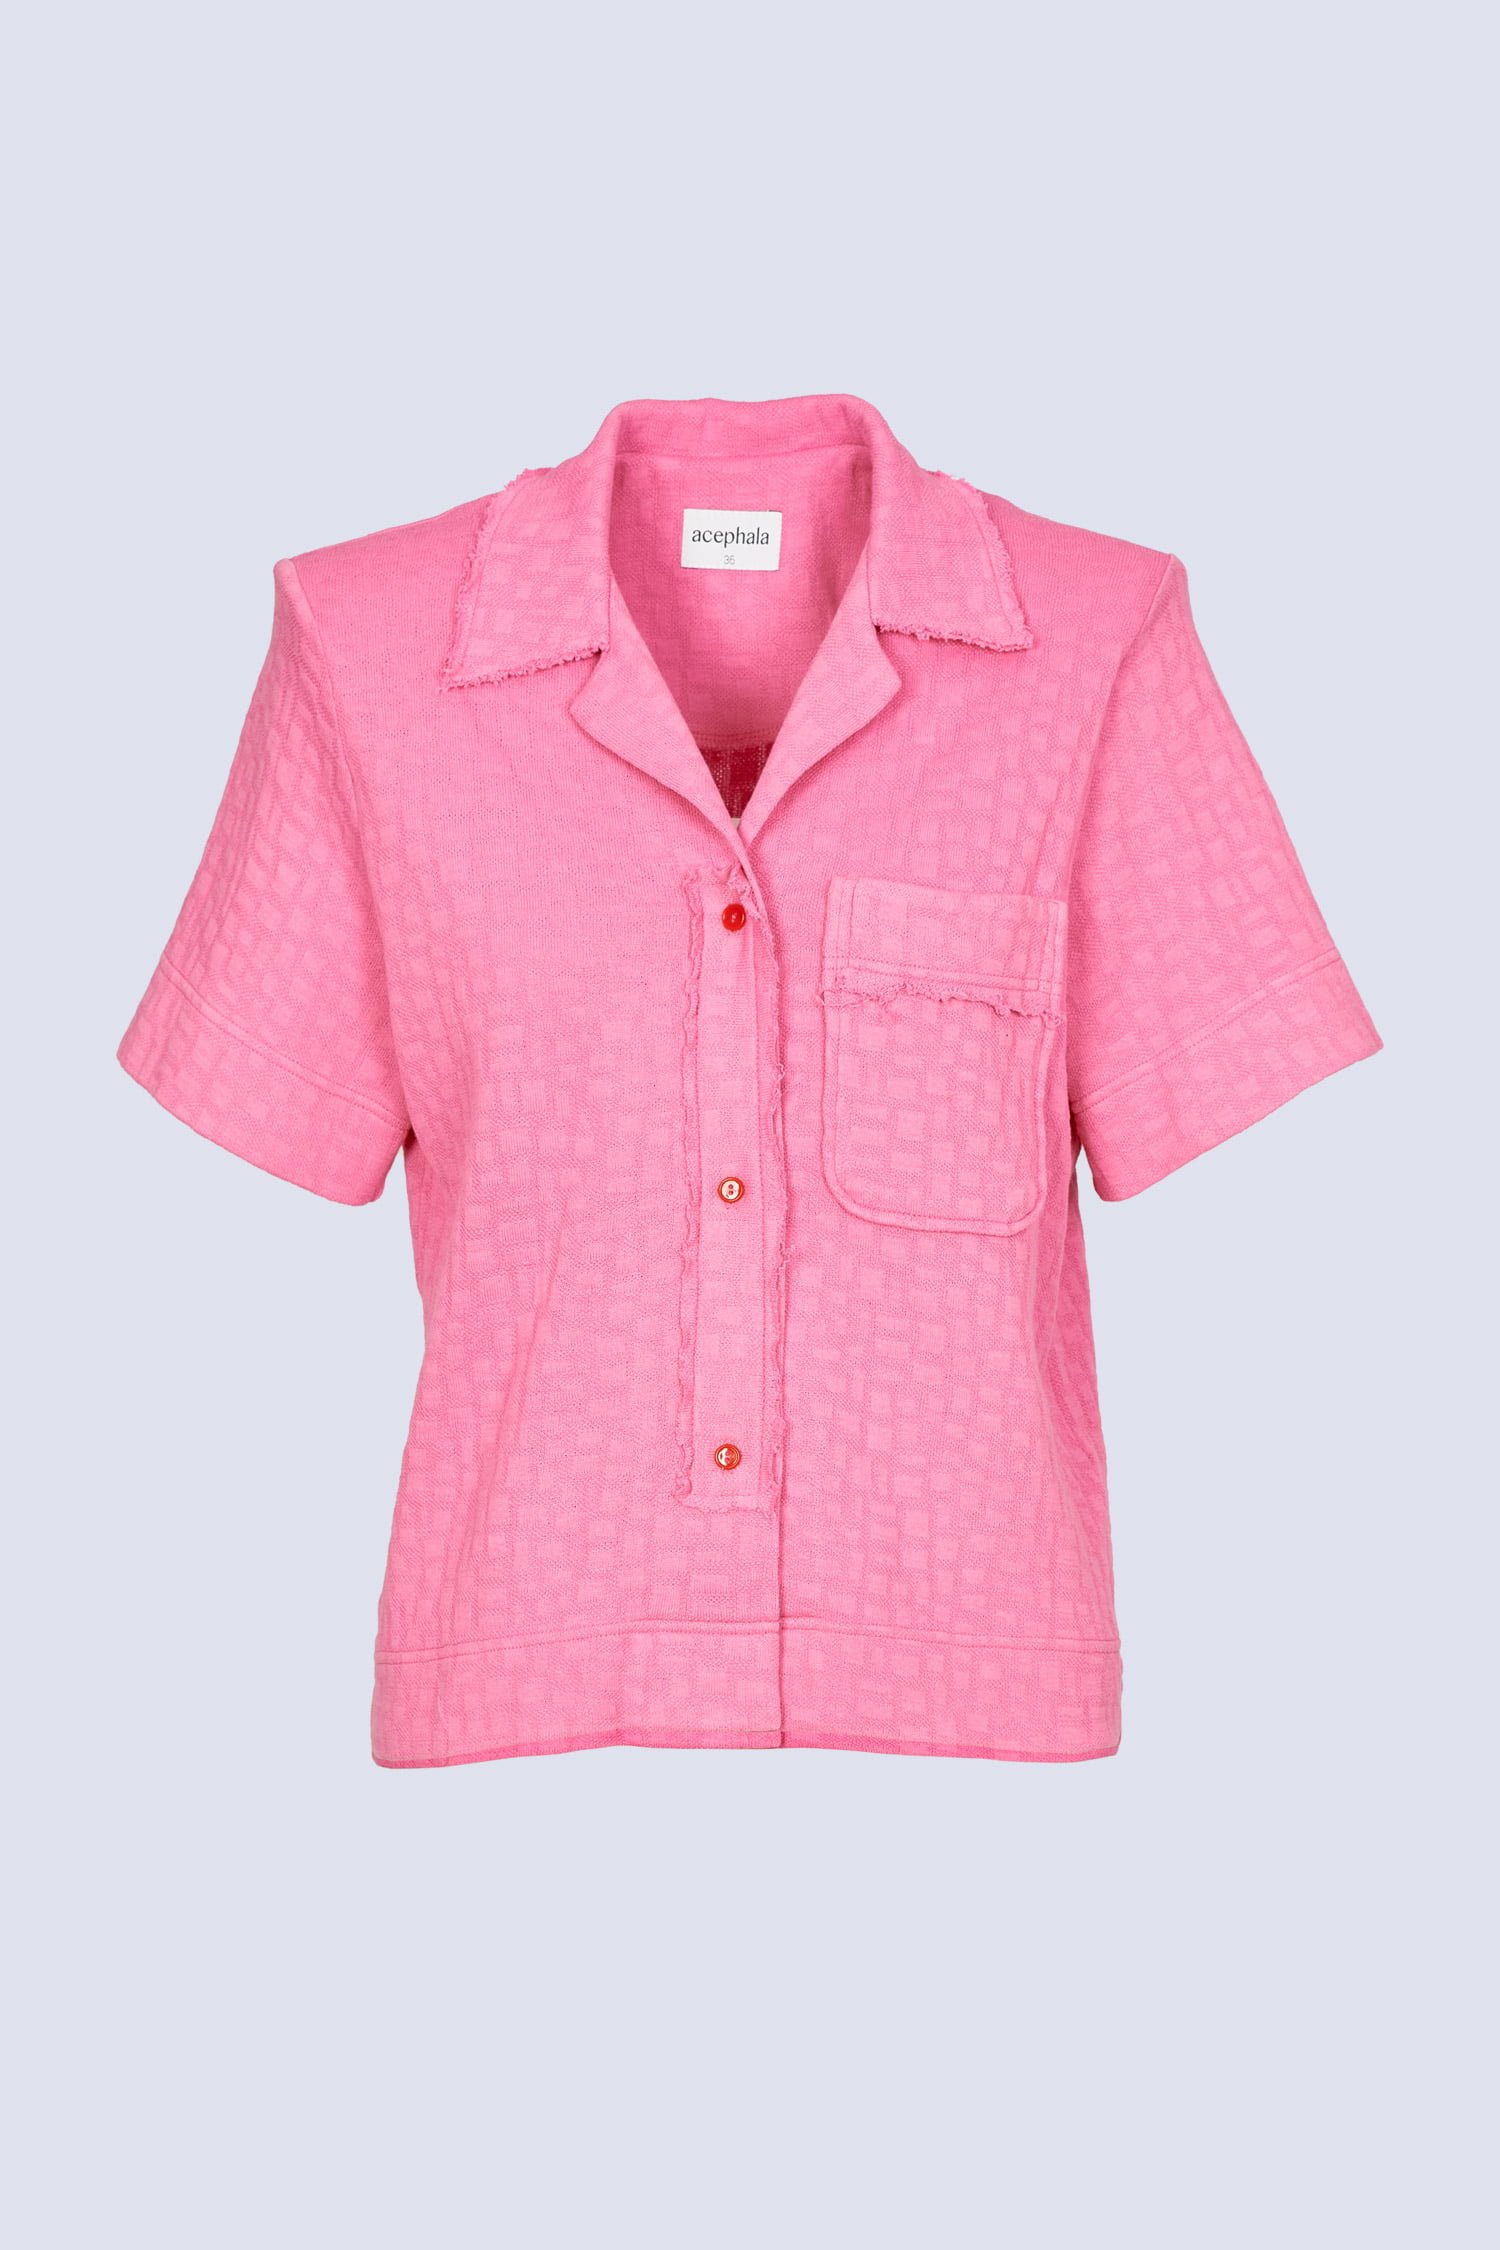 Acephala Ss22 Packshot Pink Short Sleeve Shirt